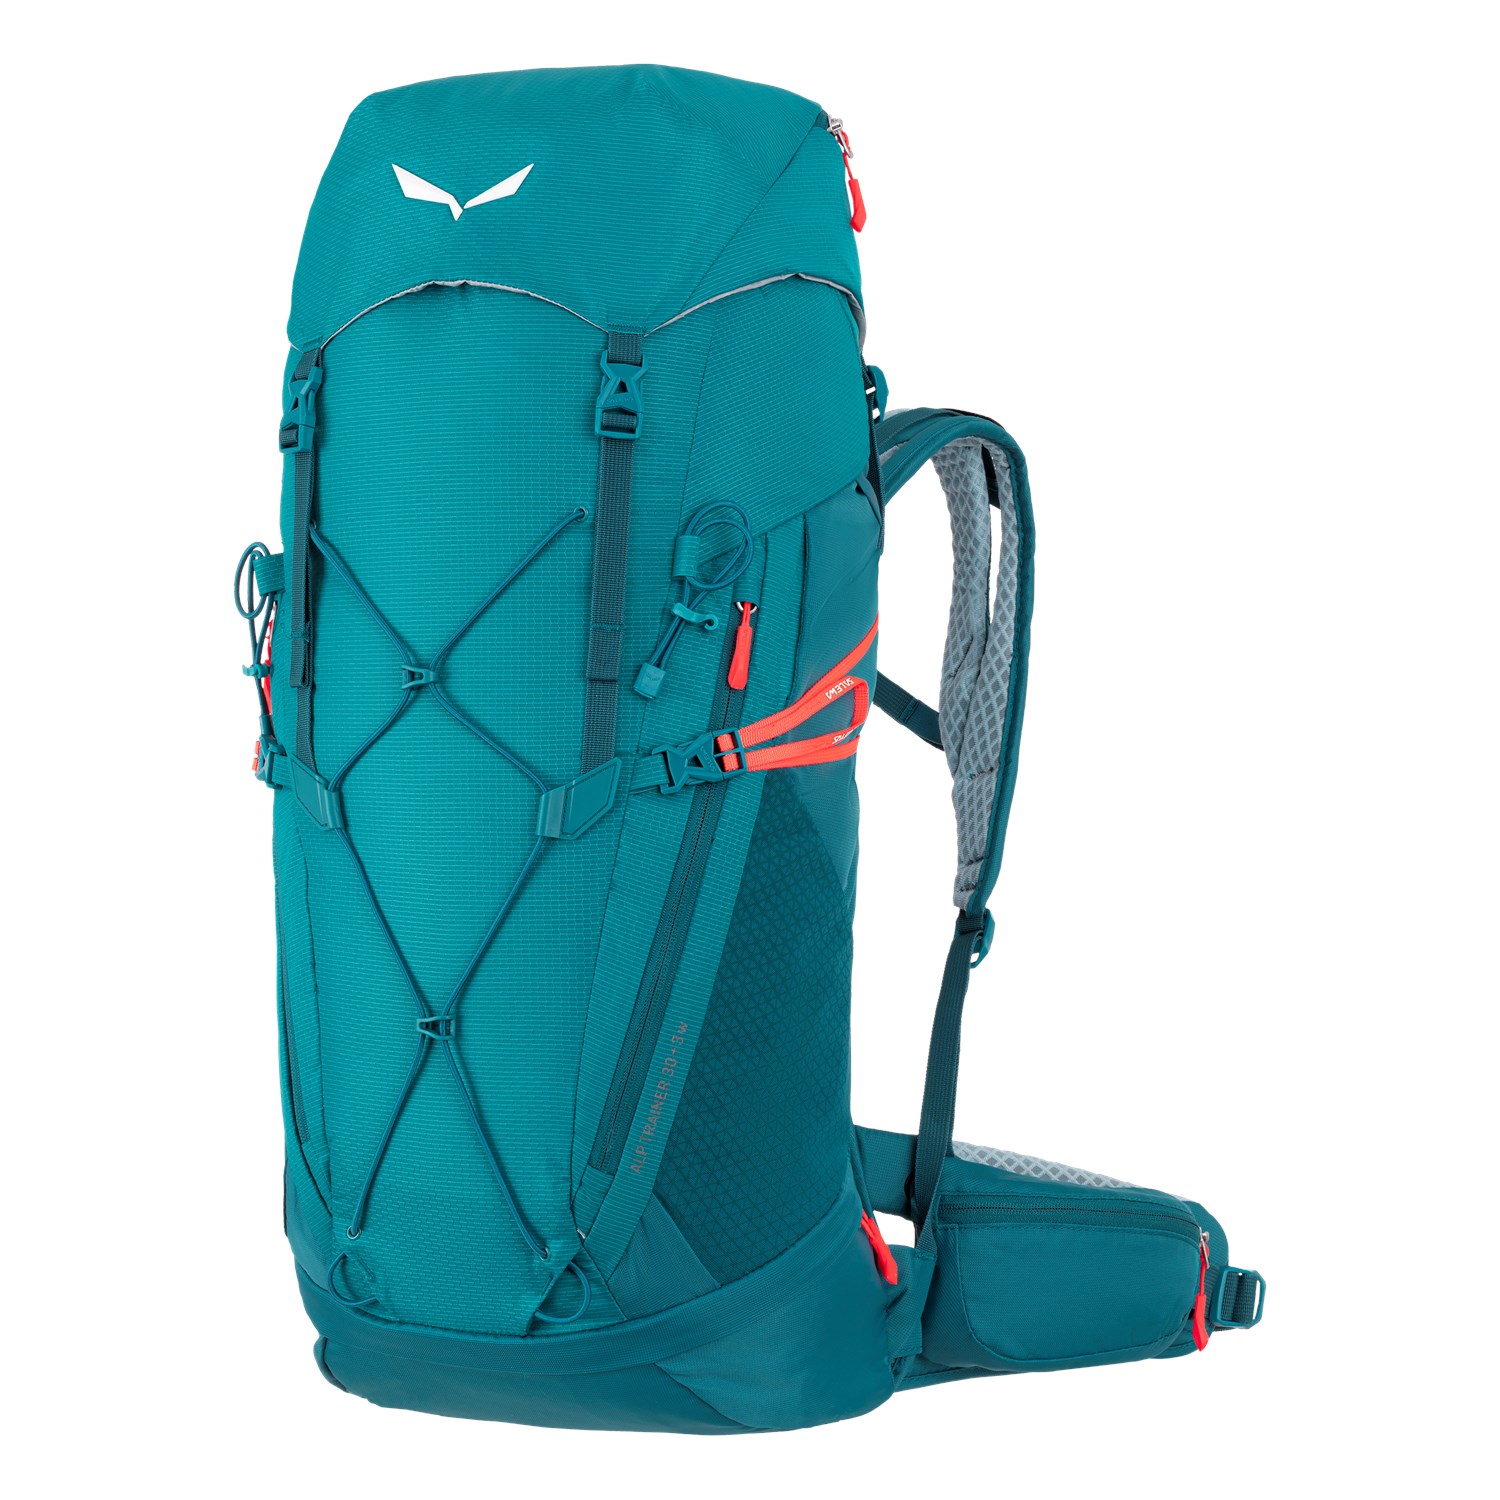 Ba lô phụ nữ Salewa Alp Trainer 30+3L là sự lựa chọn hoàn hảo cho những chuyến đi leo núi và phượt bụi. Với dung tích 30+3 lít, bạn có thể mang theo đủ đồ cần thiết mà không cảm thấy nặng nề. Thiết kế đẹp mắt, chất liệu chắc chắn và nhiều tính năng tiện ích khác là những lý do tại sao bạn nên xem hình của sản phẩm này.